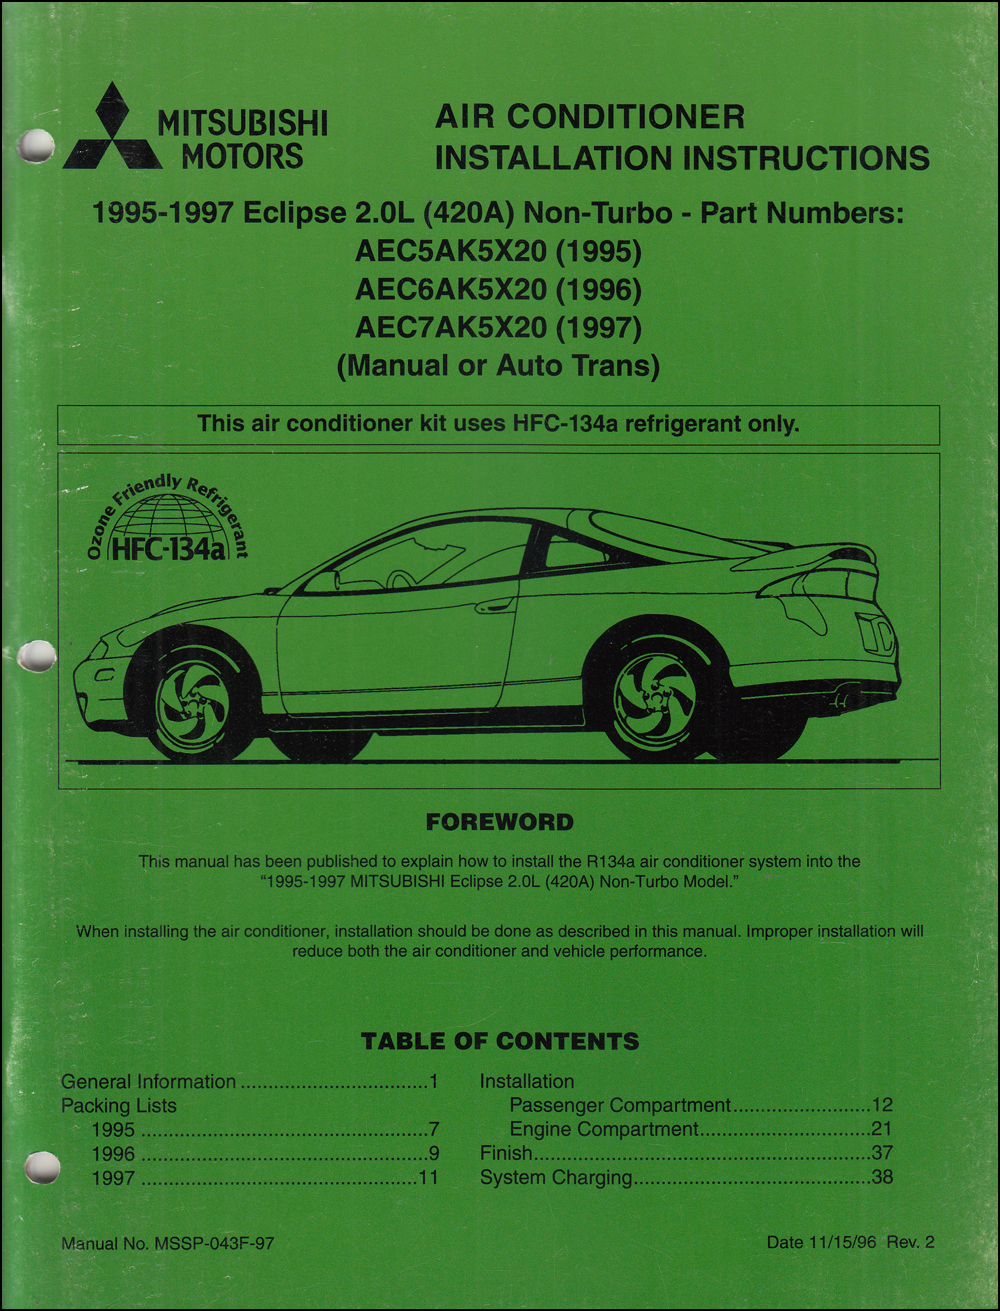 1995-1997 Mitsubishi Eclipse 2.0L non-turbo Air Conditioner Installation Instruction Manual Original